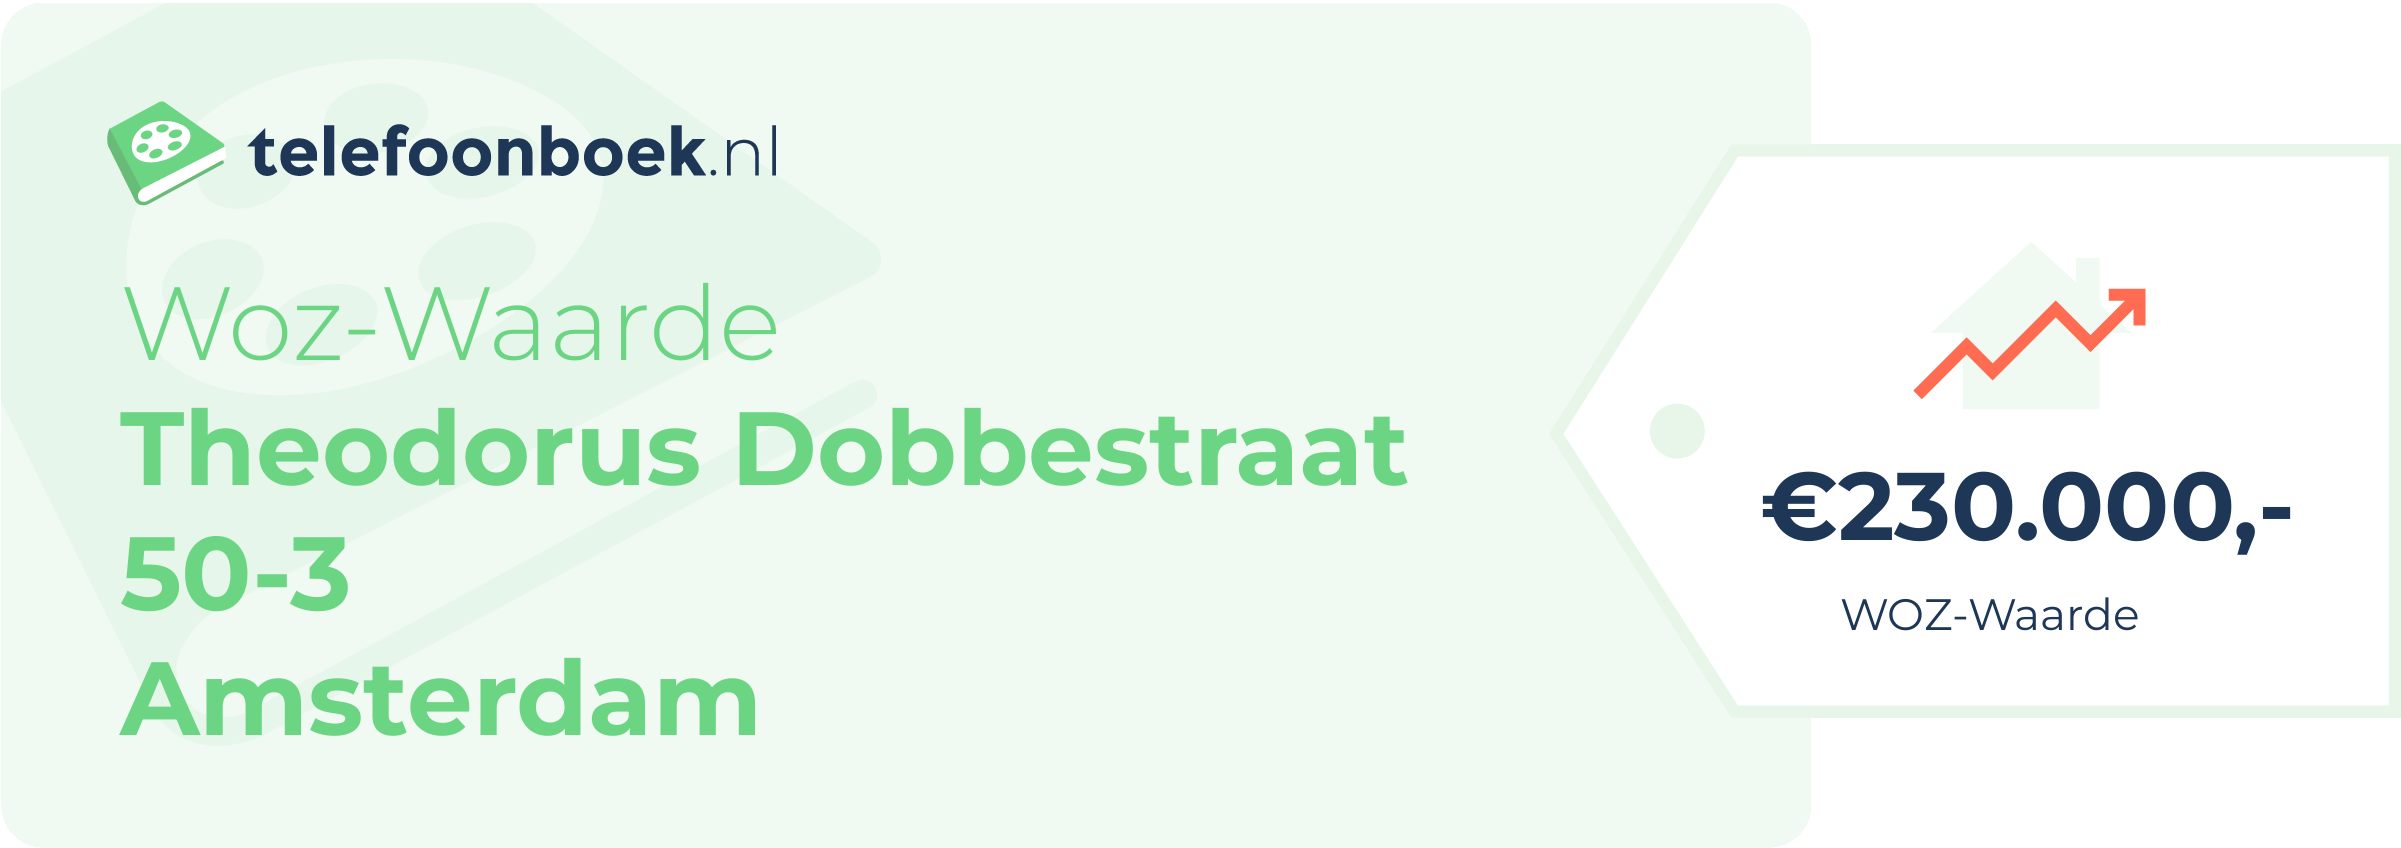 WOZ-waarde Theodorus Dobbestraat 50-3 Amsterdam